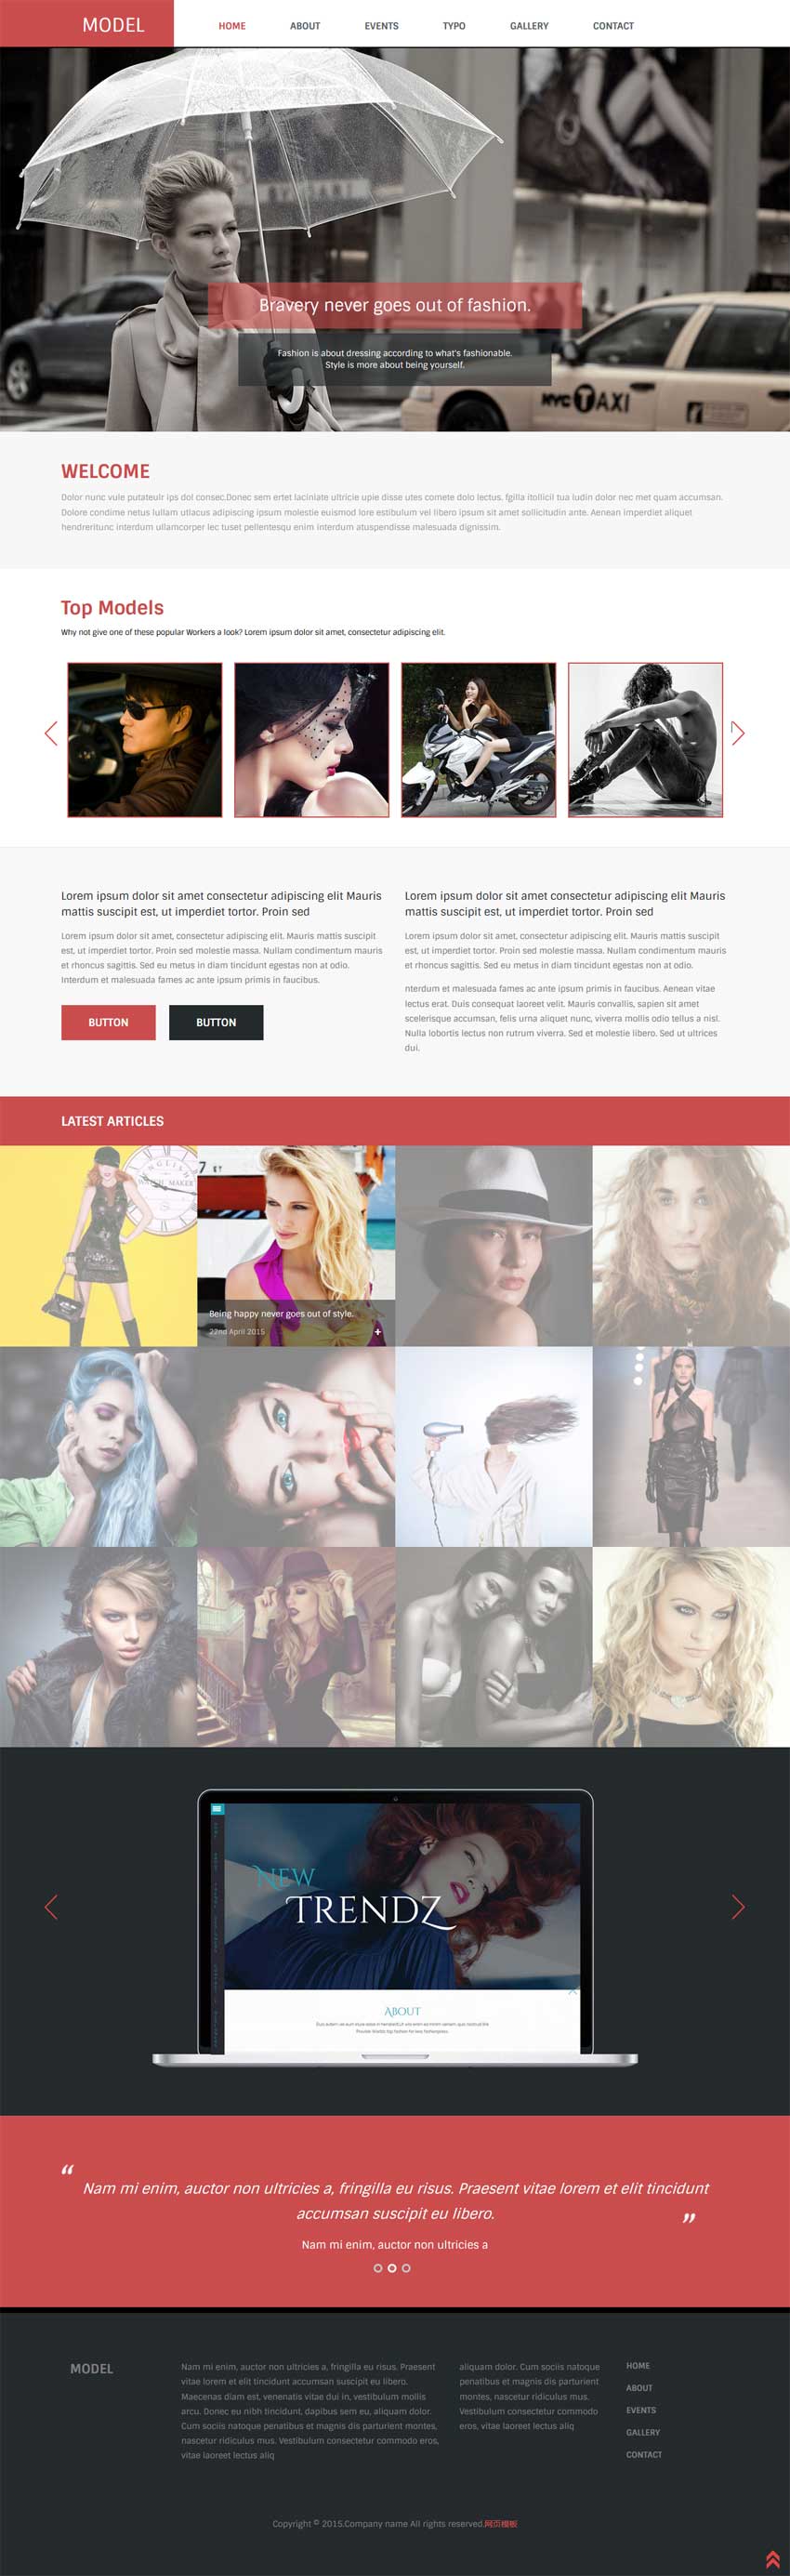 简洁宽屏的时尚模特摄影网站模板html源码